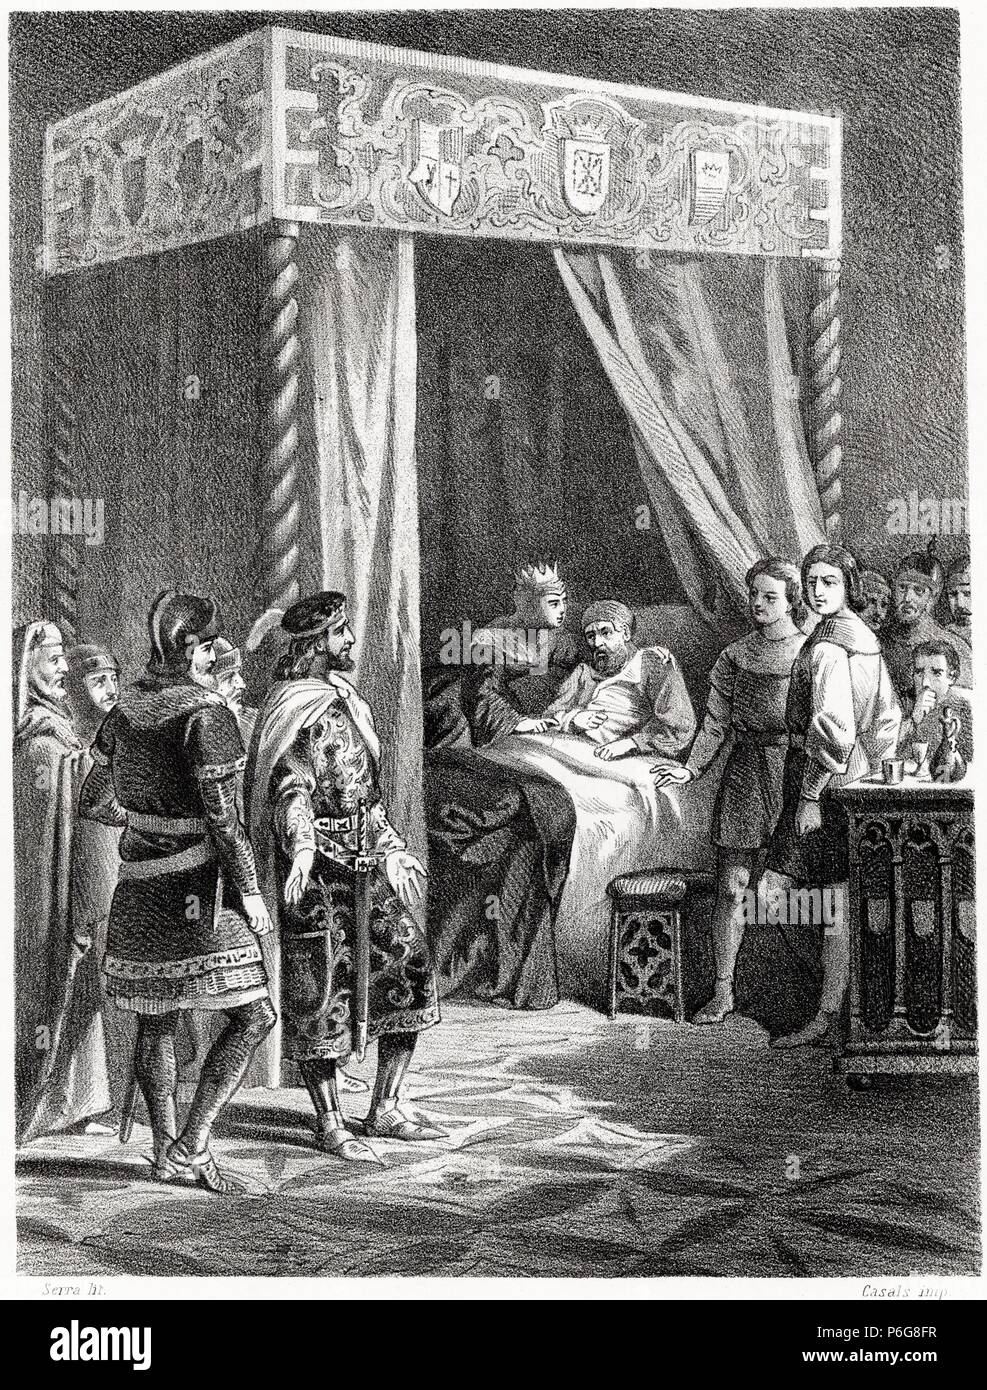 Historia de España. El rey Fernando I de Castilla y León visitando a su hermano Don García en el año 1030. Grabado de 1872. Stock Photo